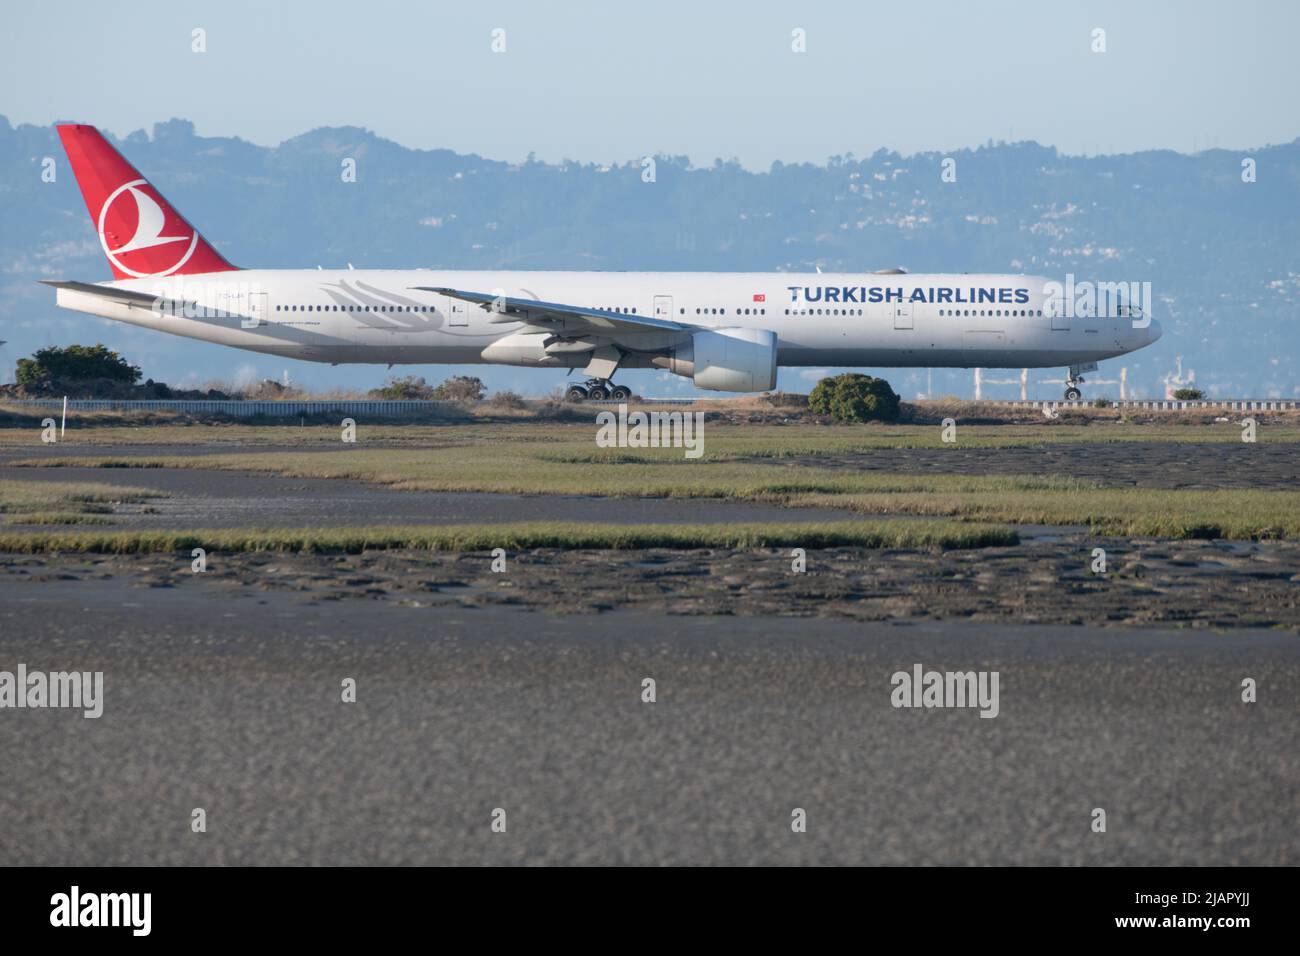 Un avion de compagnie aérienne turque sur la piste de l'aéroport international de San Francisco sur la côte de la Californie, des États-Unis et de l'Amérique du Nord. Banque D'Images